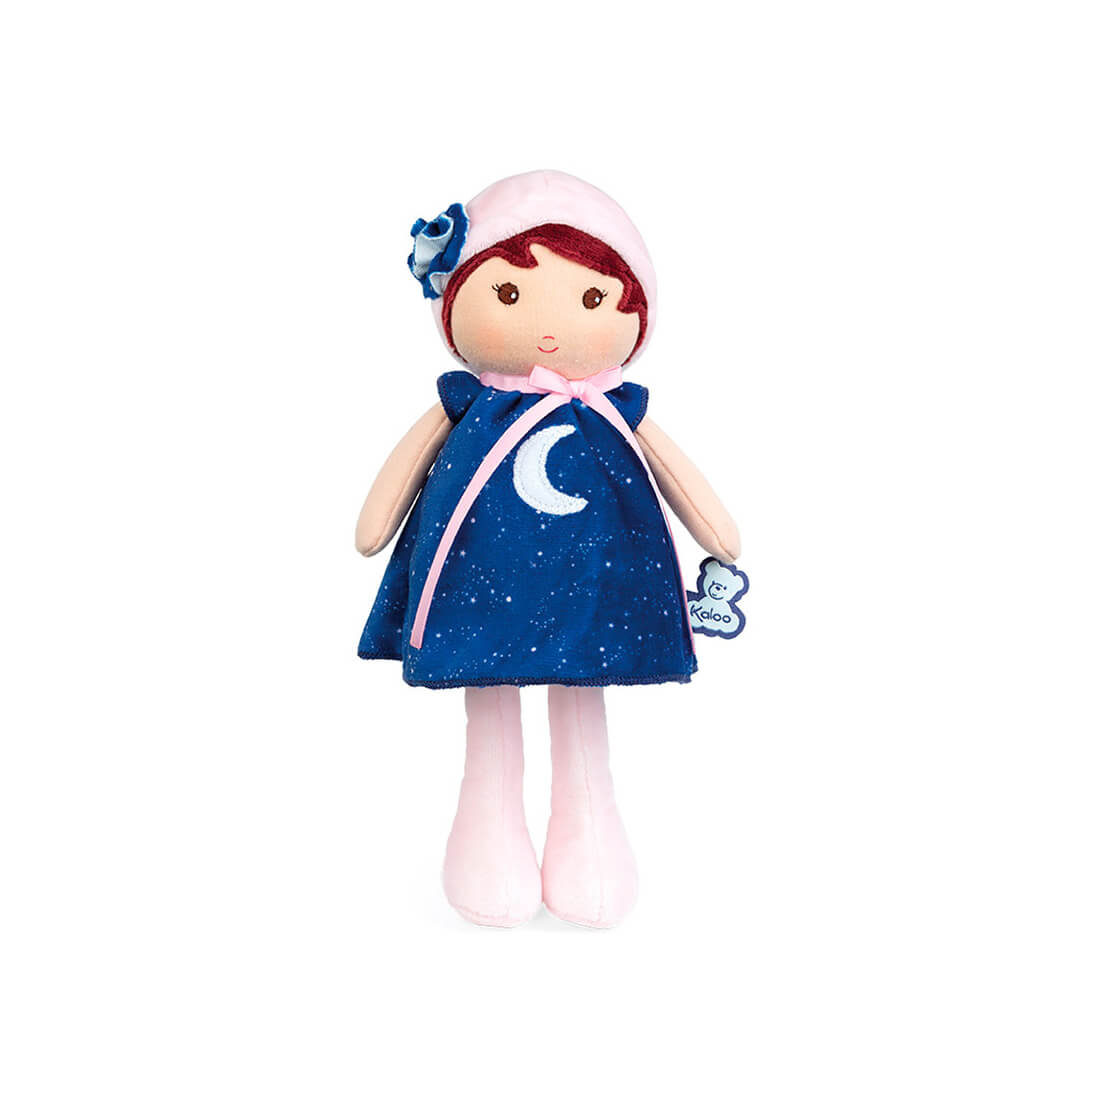 Текстильная кукла Kaloo "Aurore", в синем платье, серия "Tendresse de Kaloo", 25 см - фото №1